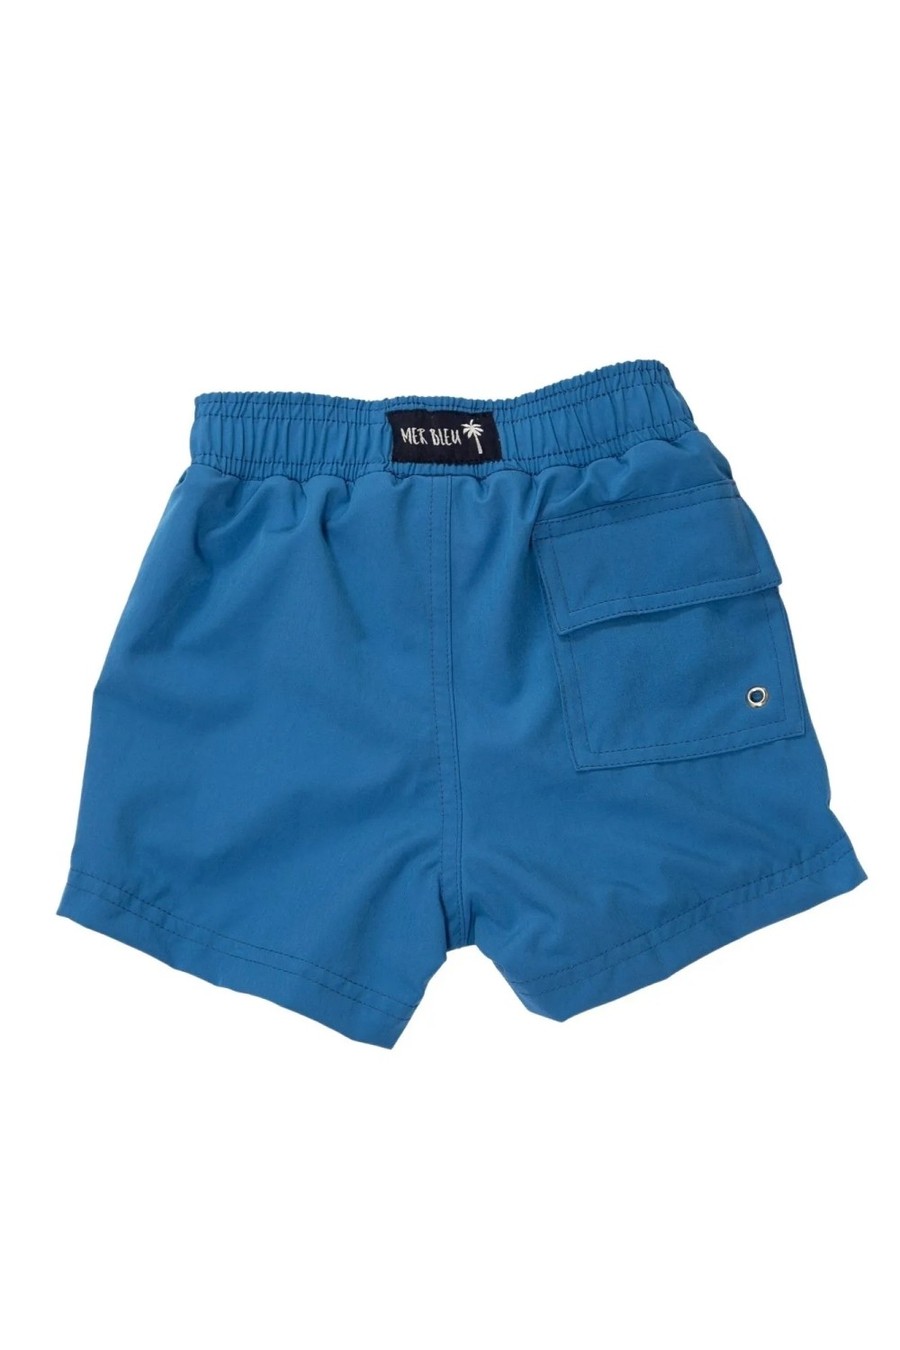 shorts infantil azul MBSIM mer bleu